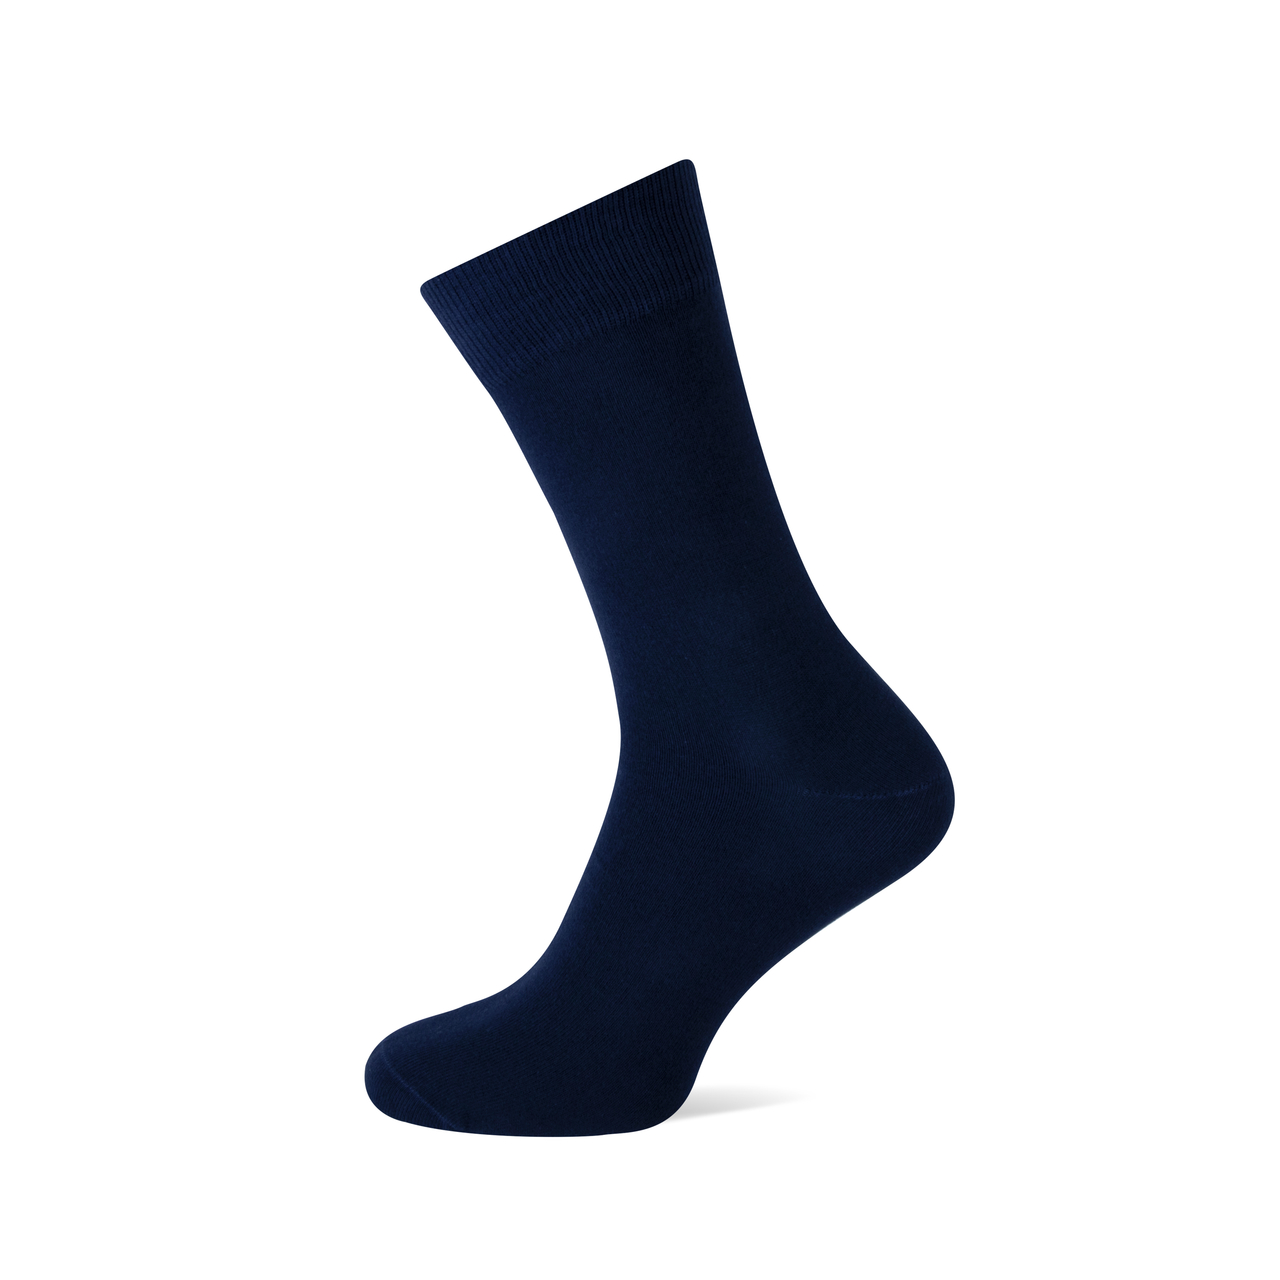 Afbeelding van Basset sokken heren marine